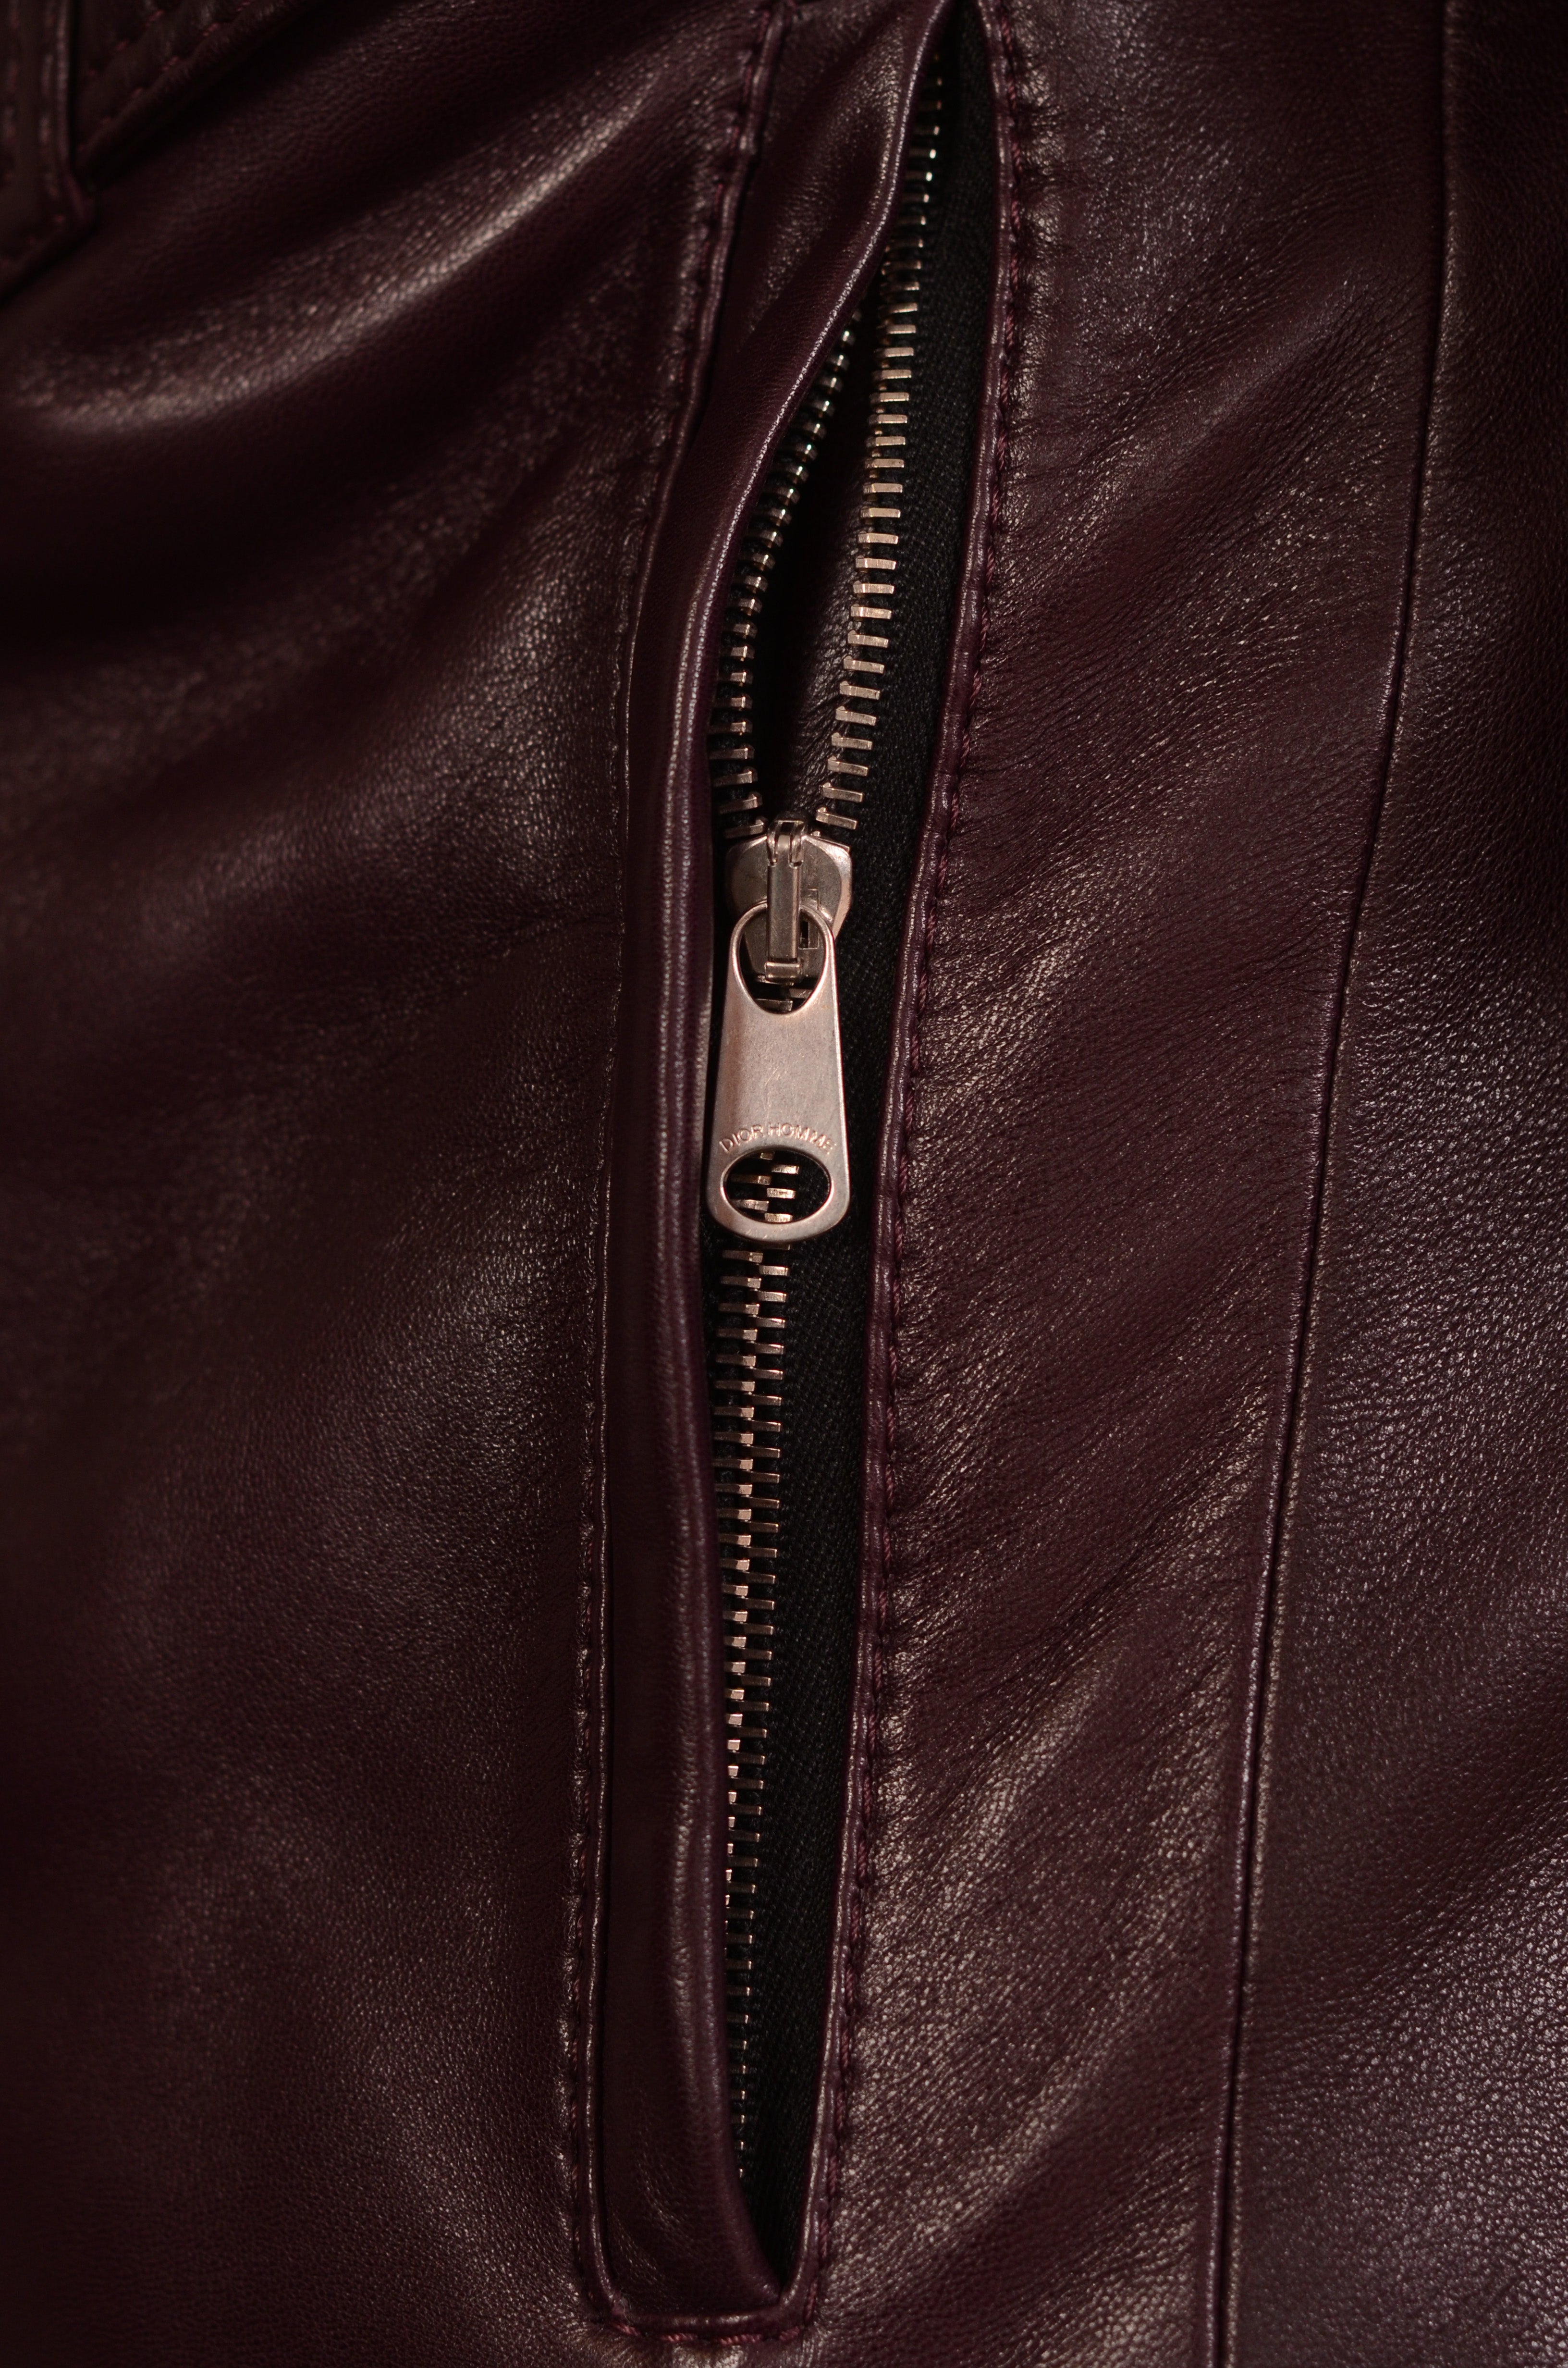 DIOR Homme Burgundy 2 In 1 Leather Padded Biker Jacket Vest 46 US XS 8H France DIOR